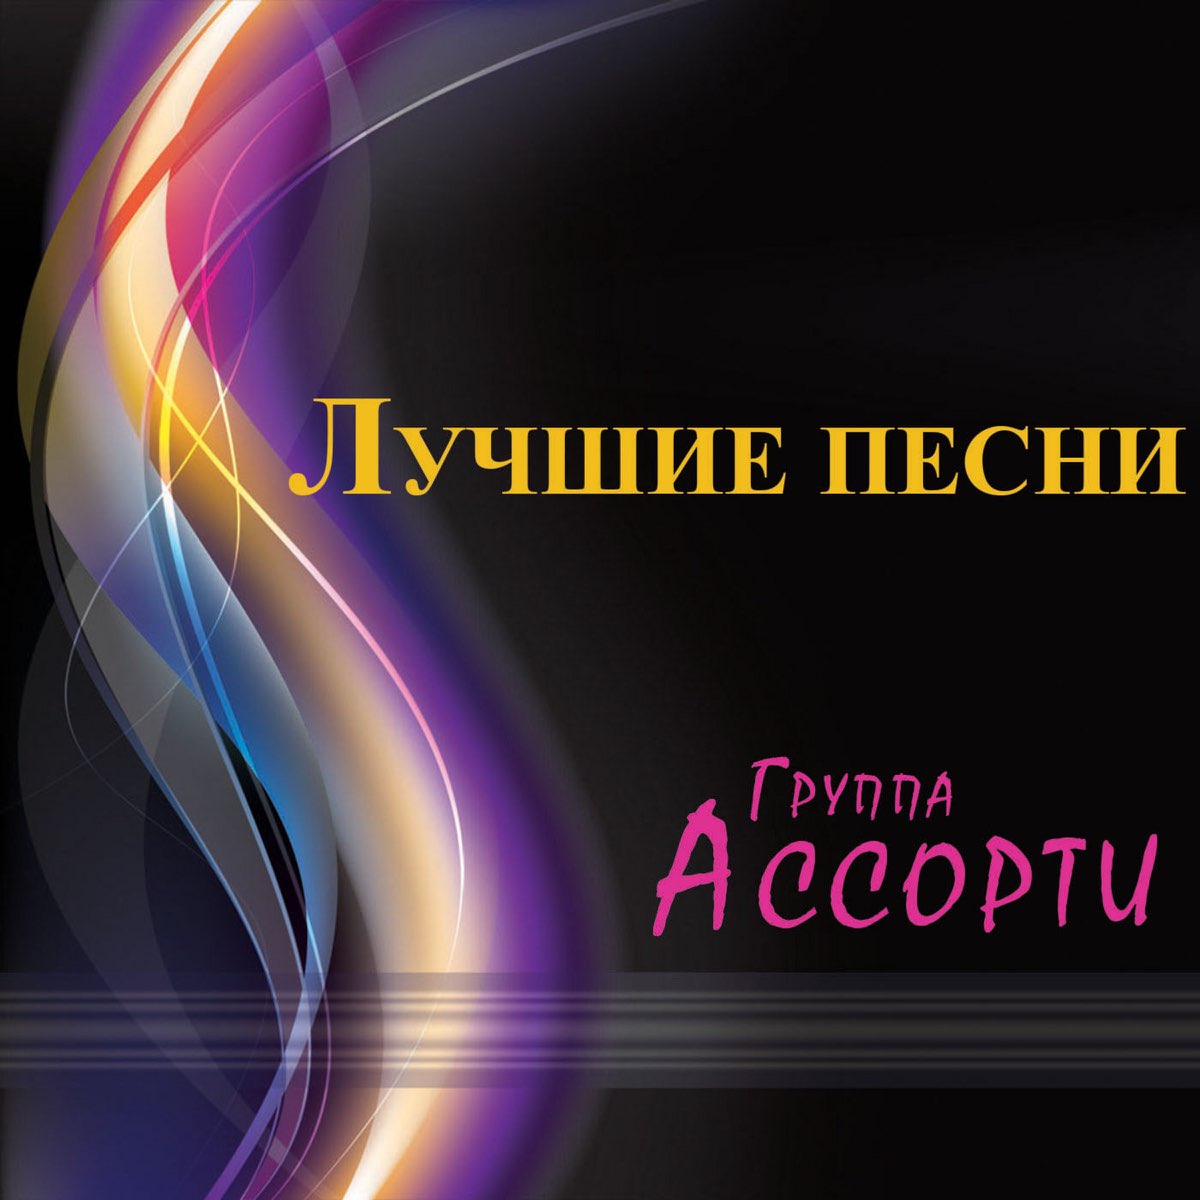 Ассорти — три белых коня (Ayur Tsyrenov Remix). Группа неземное Притяжение.